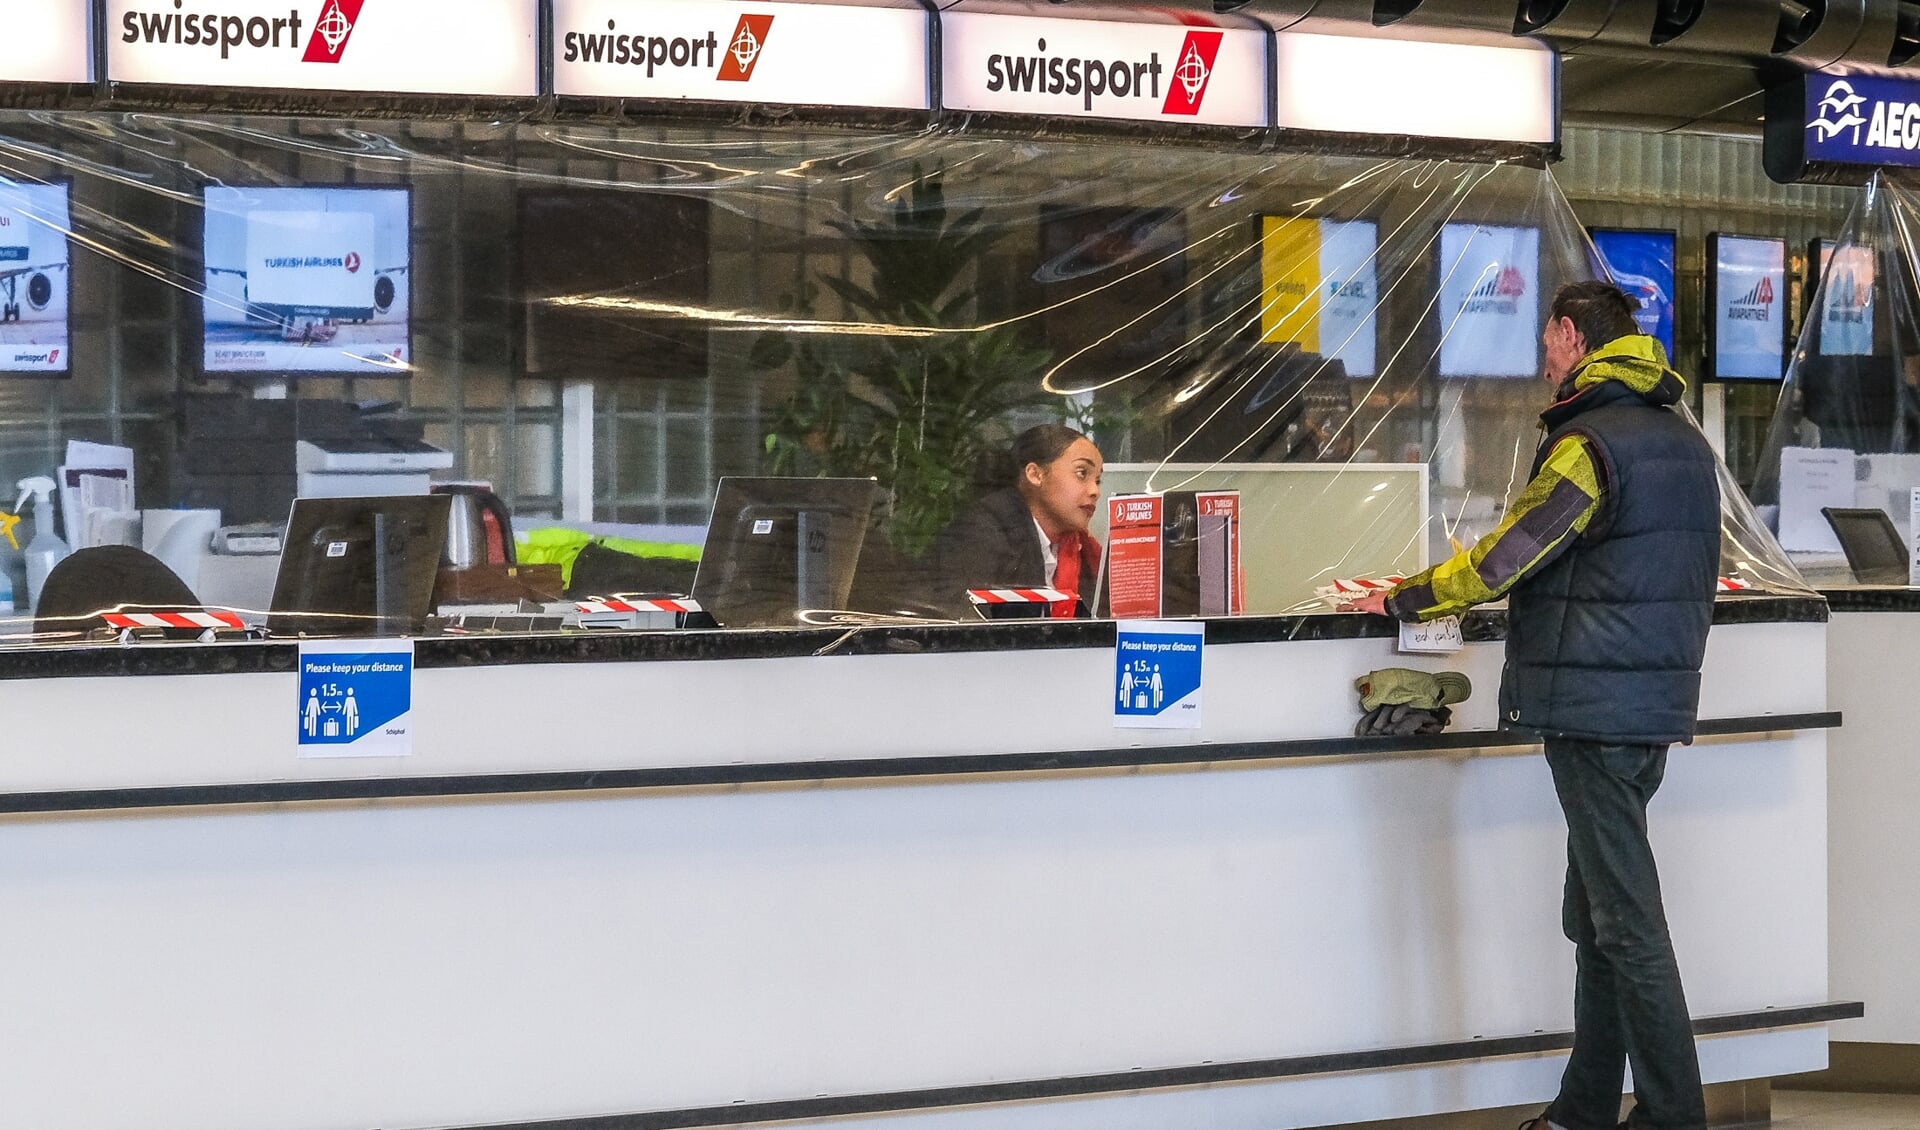 Schiphol Airport 'Ghost Town' tijdens de Corona virus